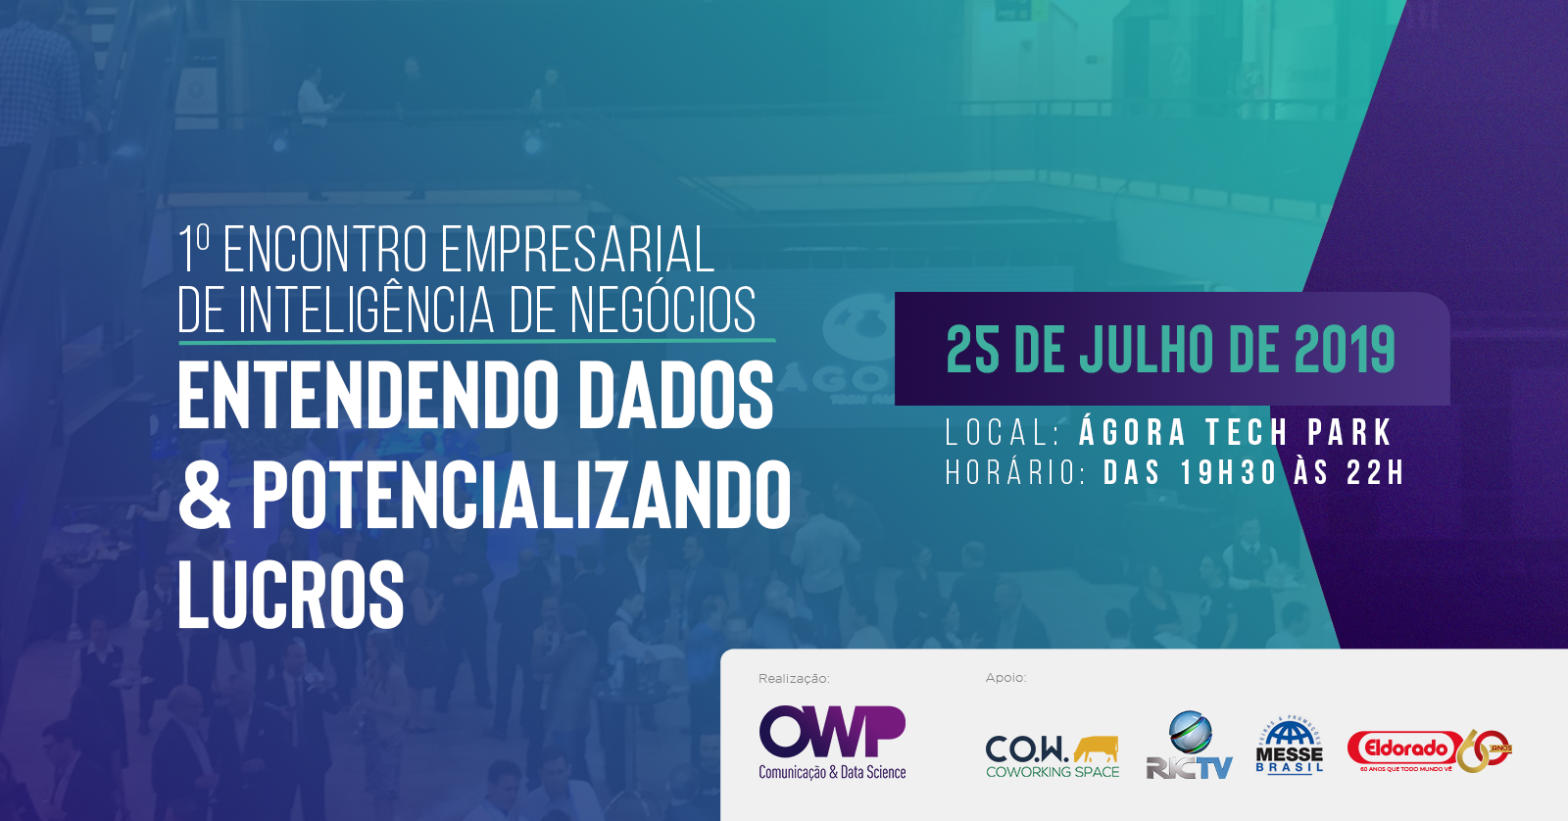 OWP Comunicação & Data Science realiza 1º Encontro Empresarial de Inteligência de Negócios nesta quinta-feira (25) em Joinville